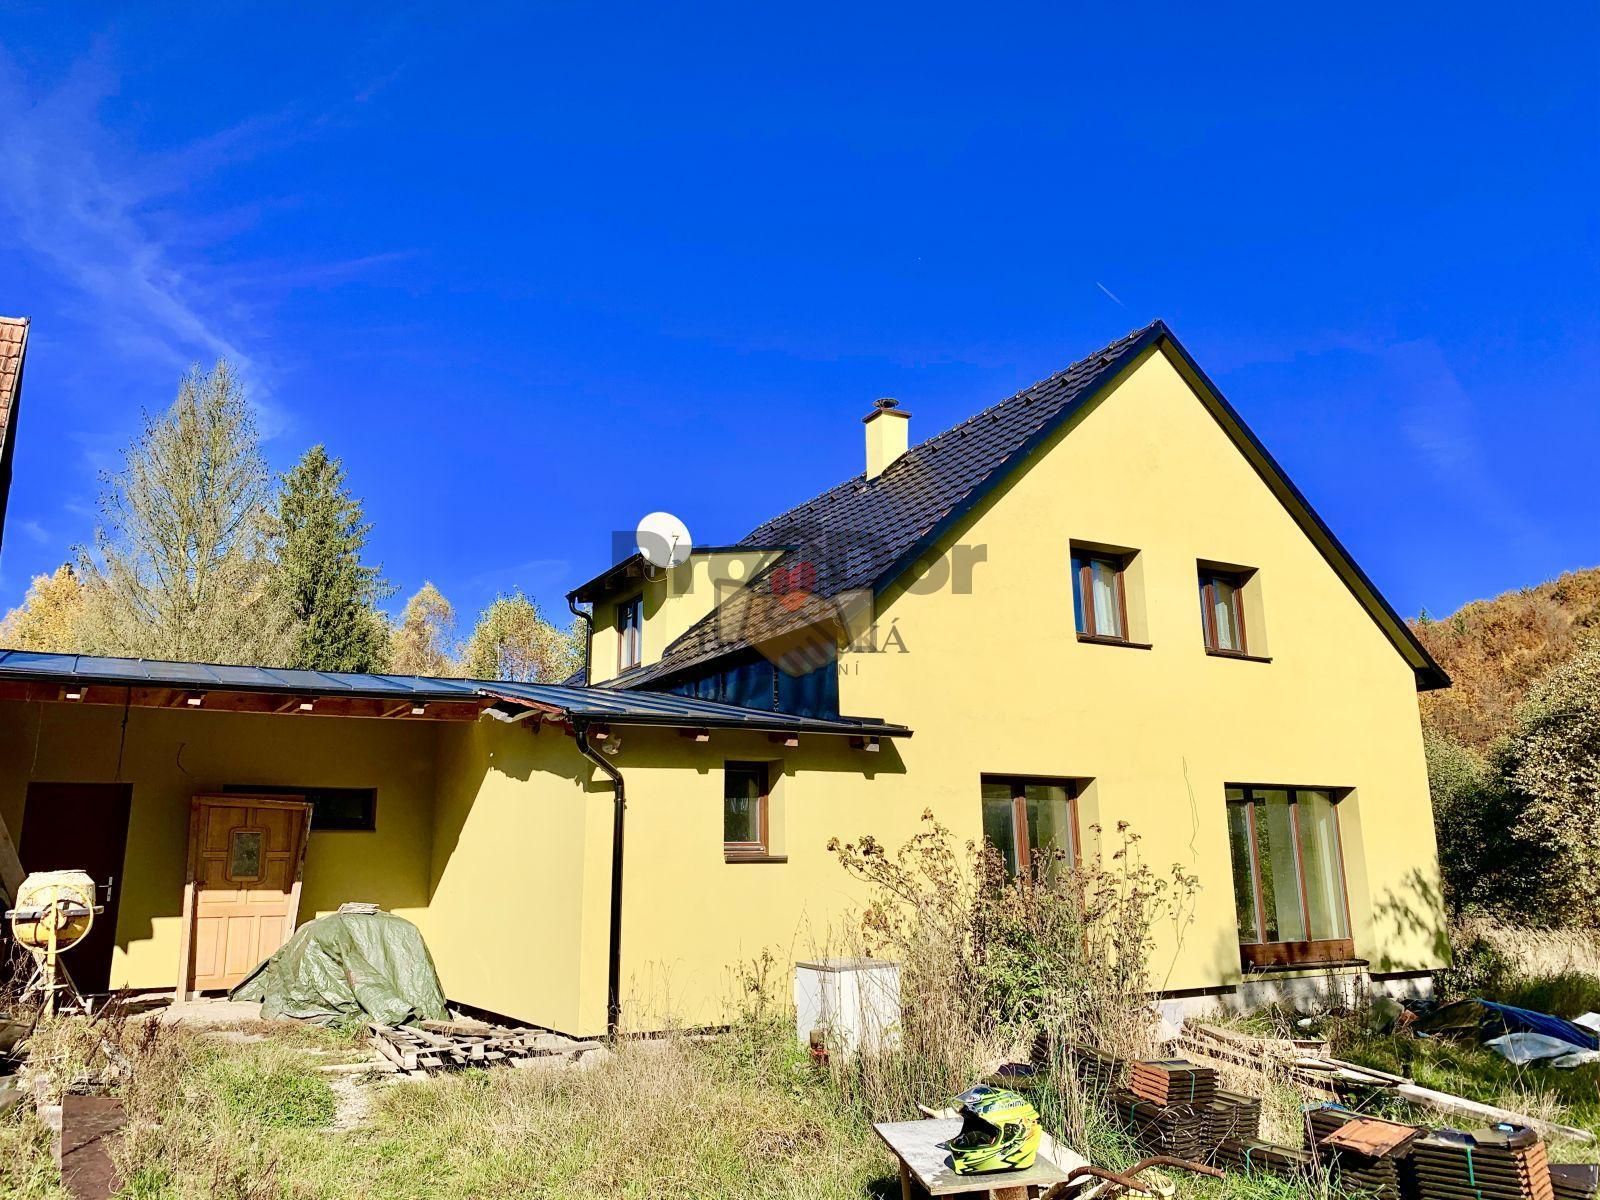 Prodej rodinný dům 4+1, obec Rajnochovice, okres Kroměříž, CP 3654 m2